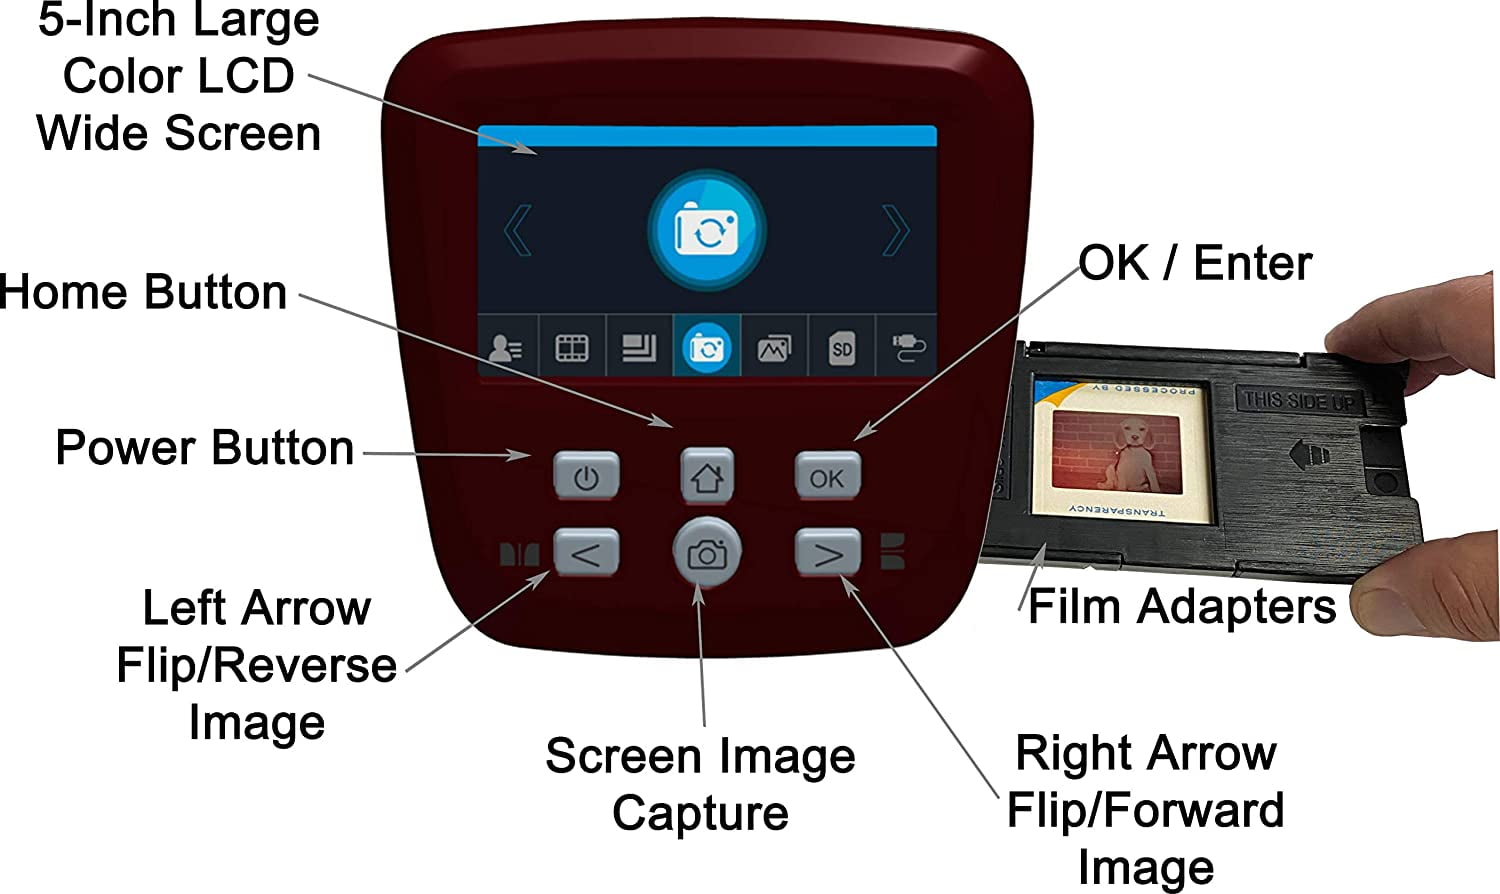 MINOLTA Revive 3 Film & Slide Scanner Converter to Digital Images –  MinoltaScanner